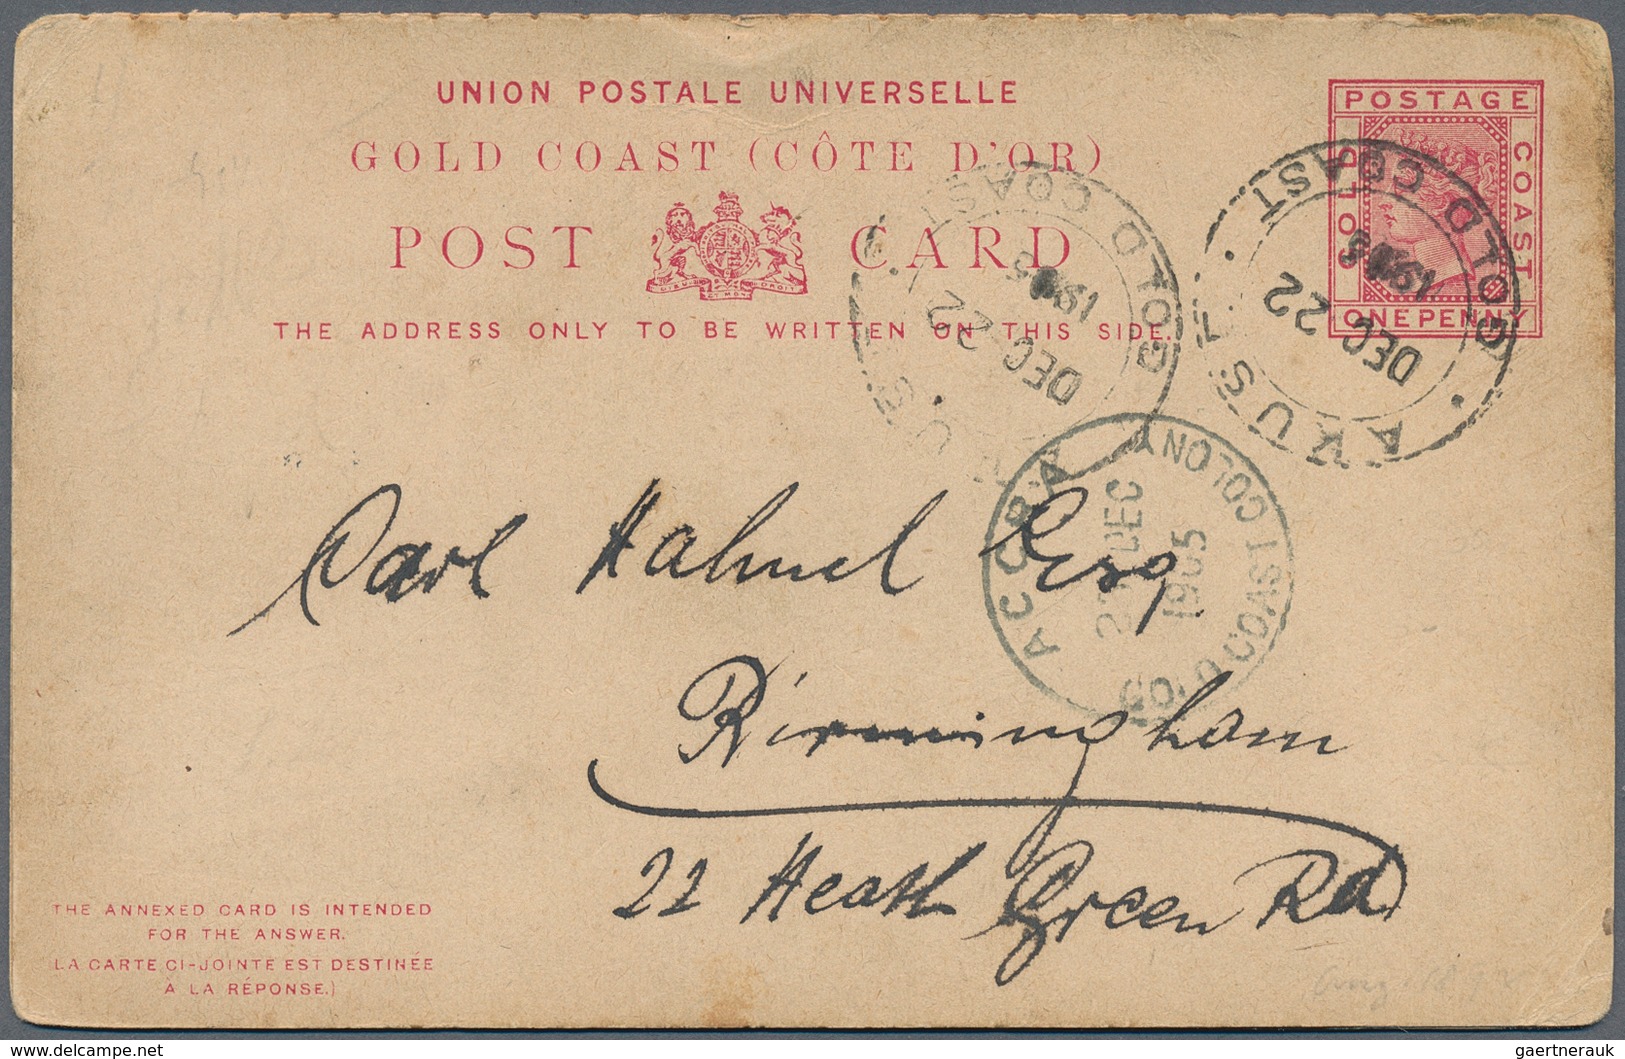 Goldküste: 1894/1952: 36 interesting envelopes, picture postcards and postal stationeries including